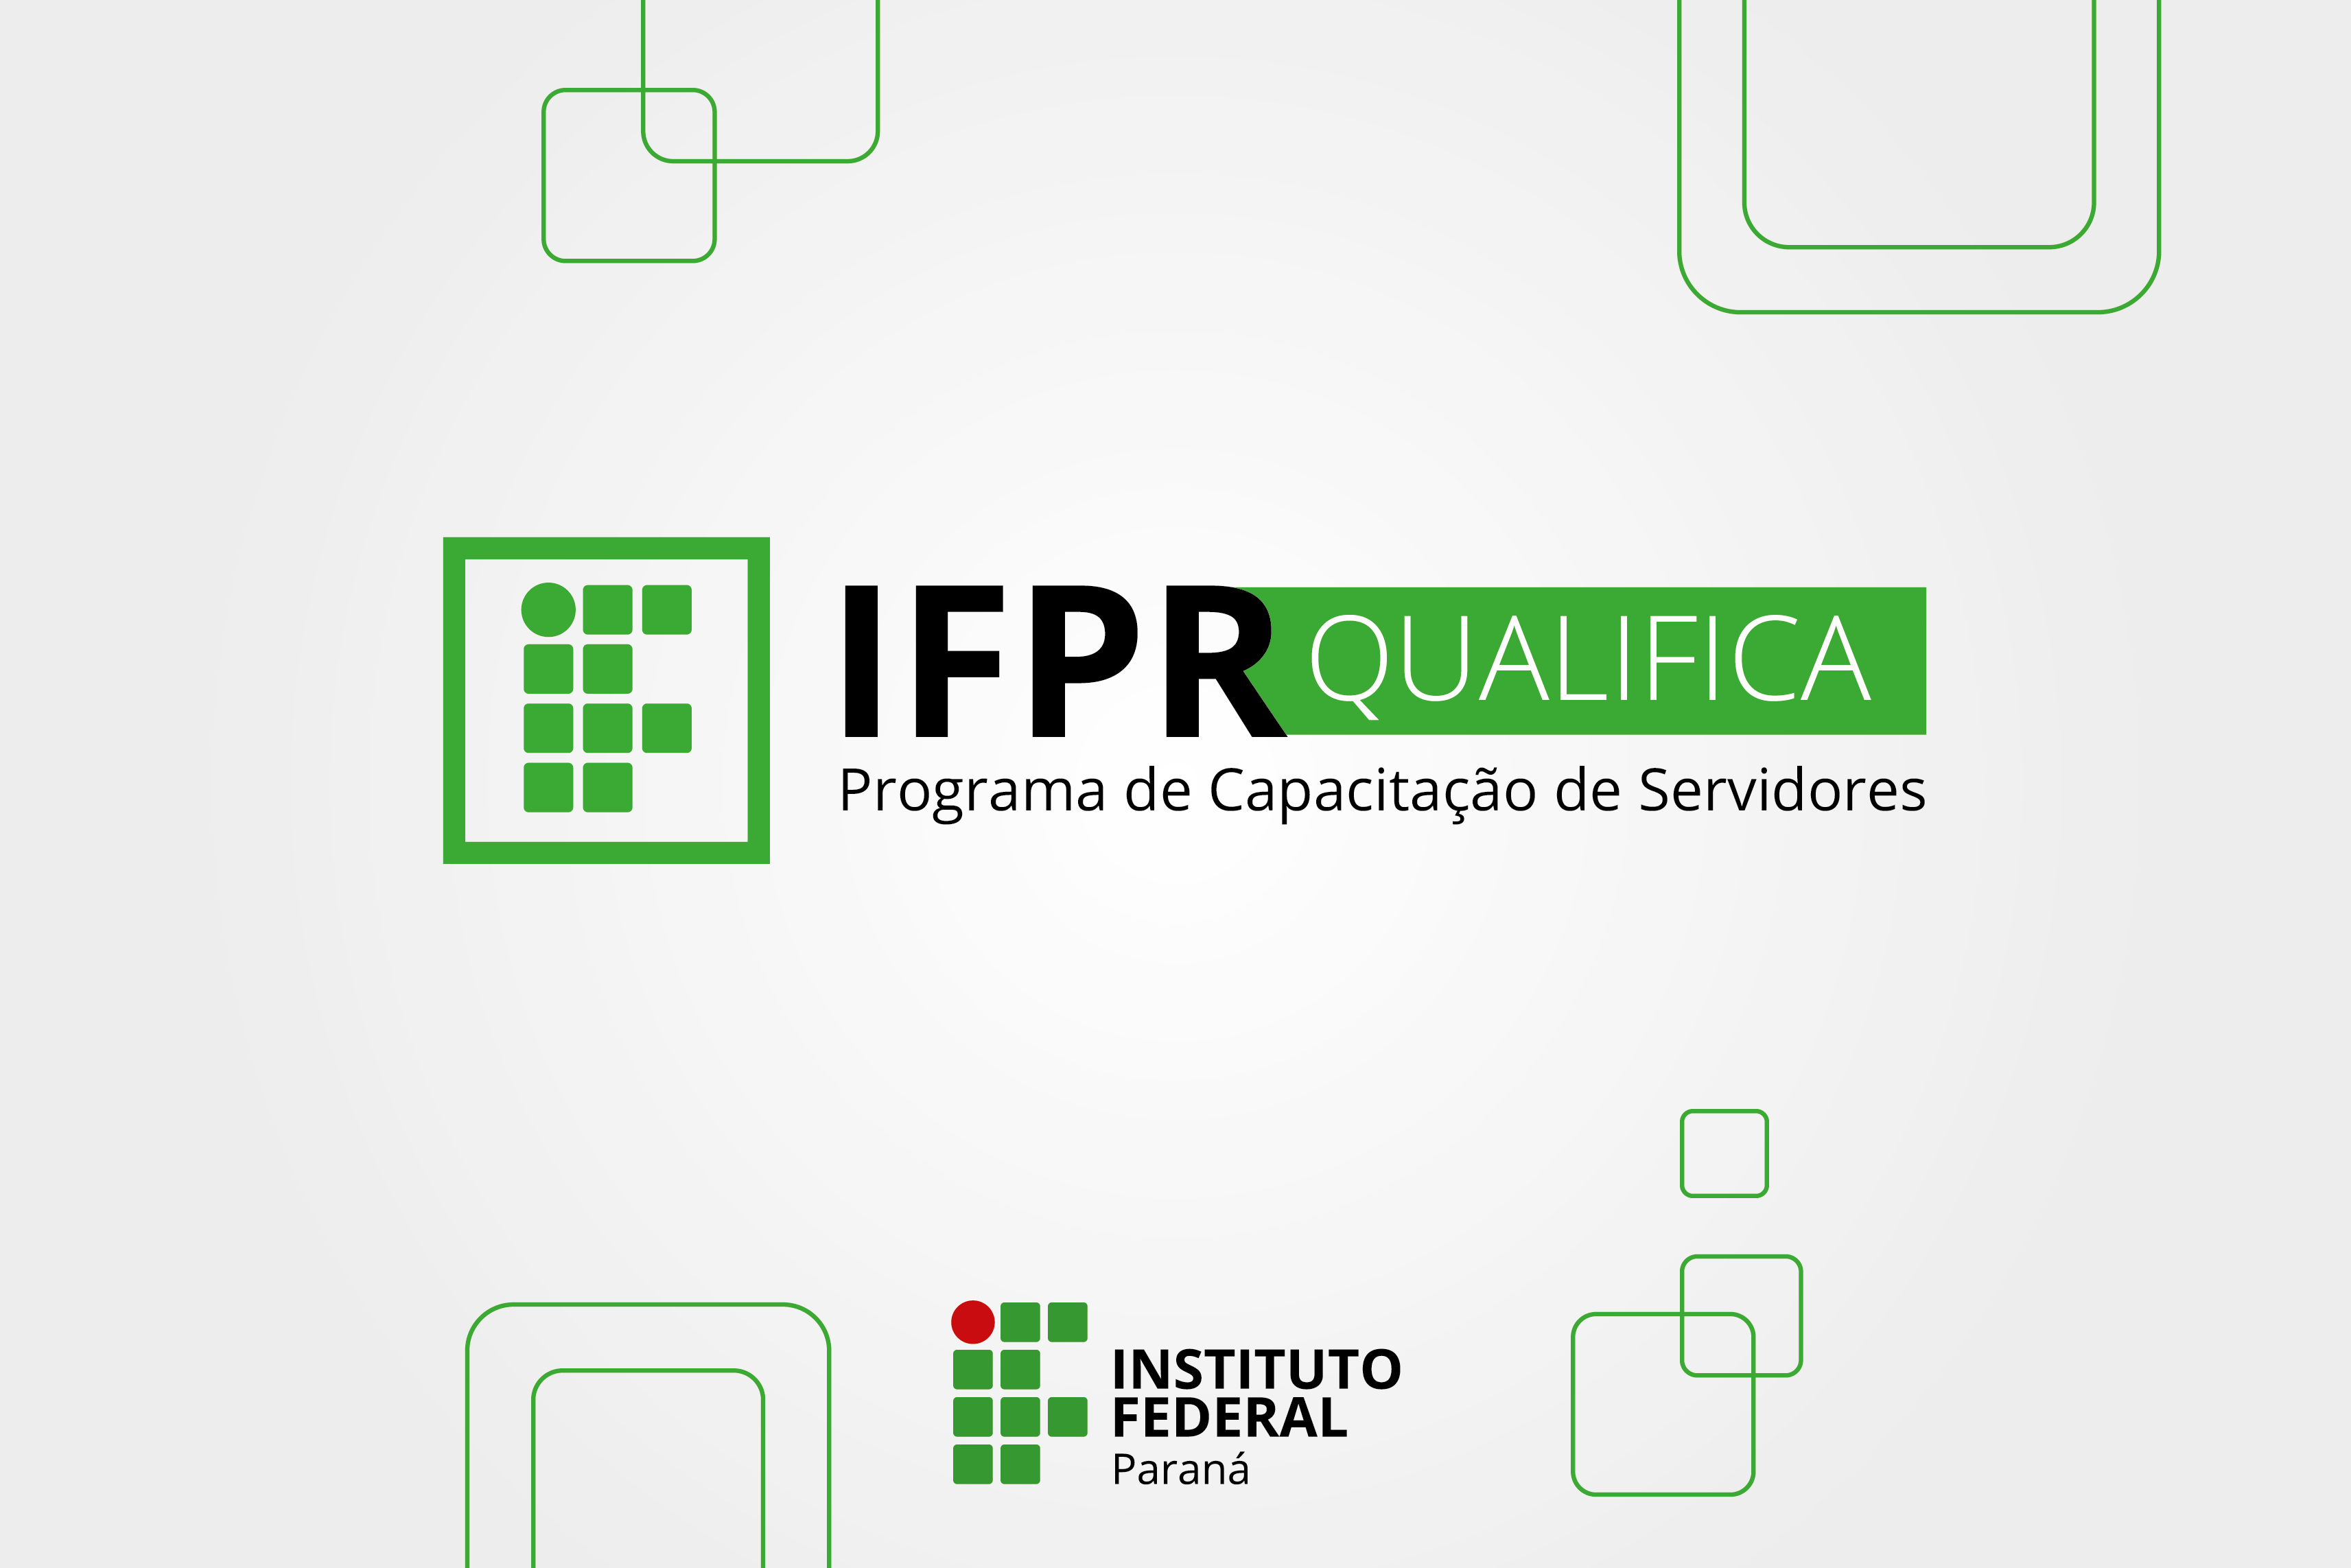 "IFPR Qualifica. Programa de capacitação de servidores"